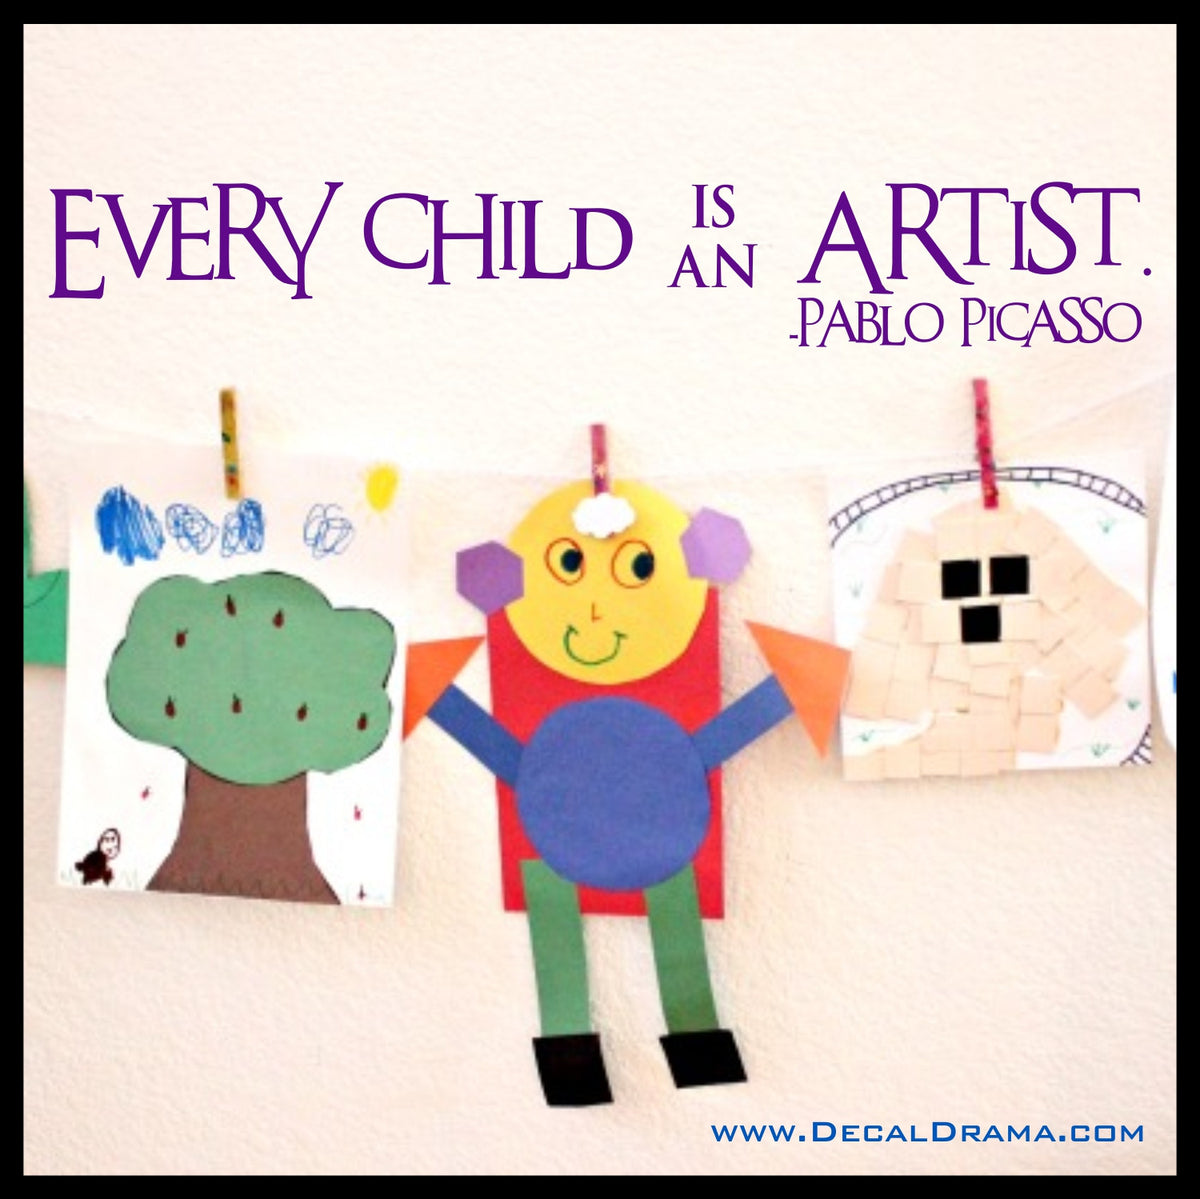 Jedes Kind ist ein Künstler Pablo Picasso Aufkleber, Vinyl